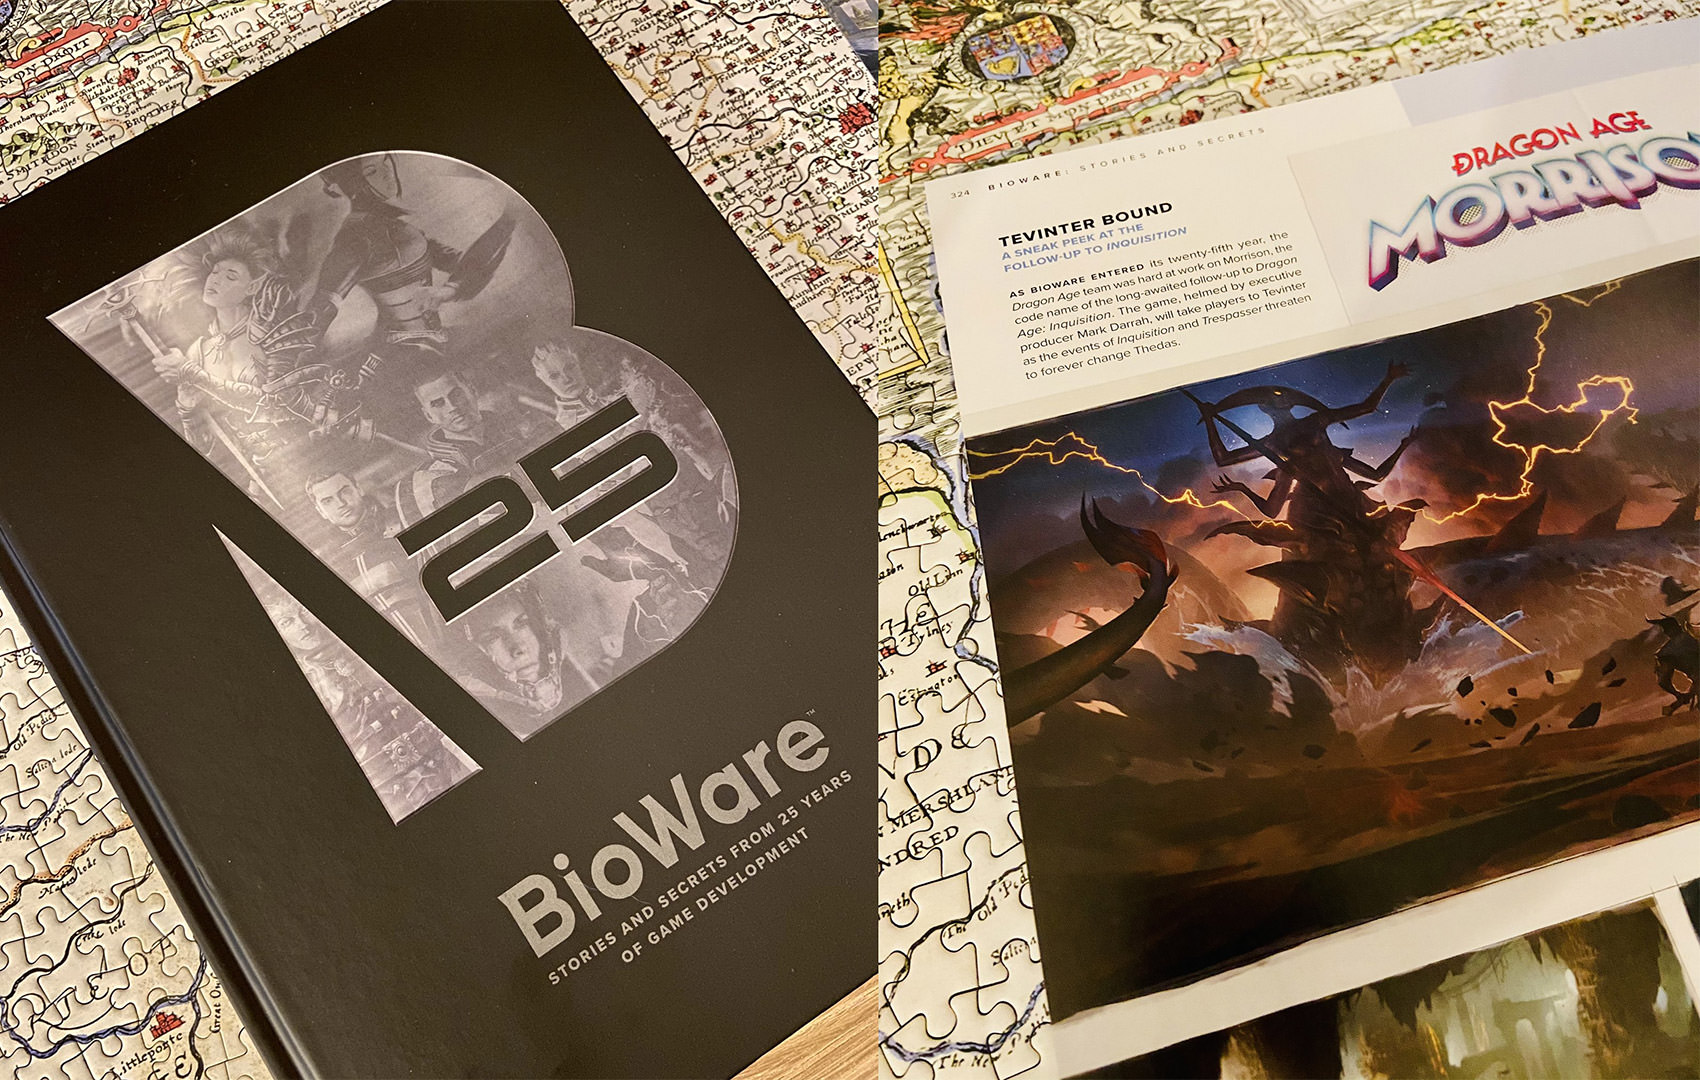 اشاره به مکان اصلی بازی Dragon Age 4 در آرت بوک جدید استودیوی Bioware / بایوور